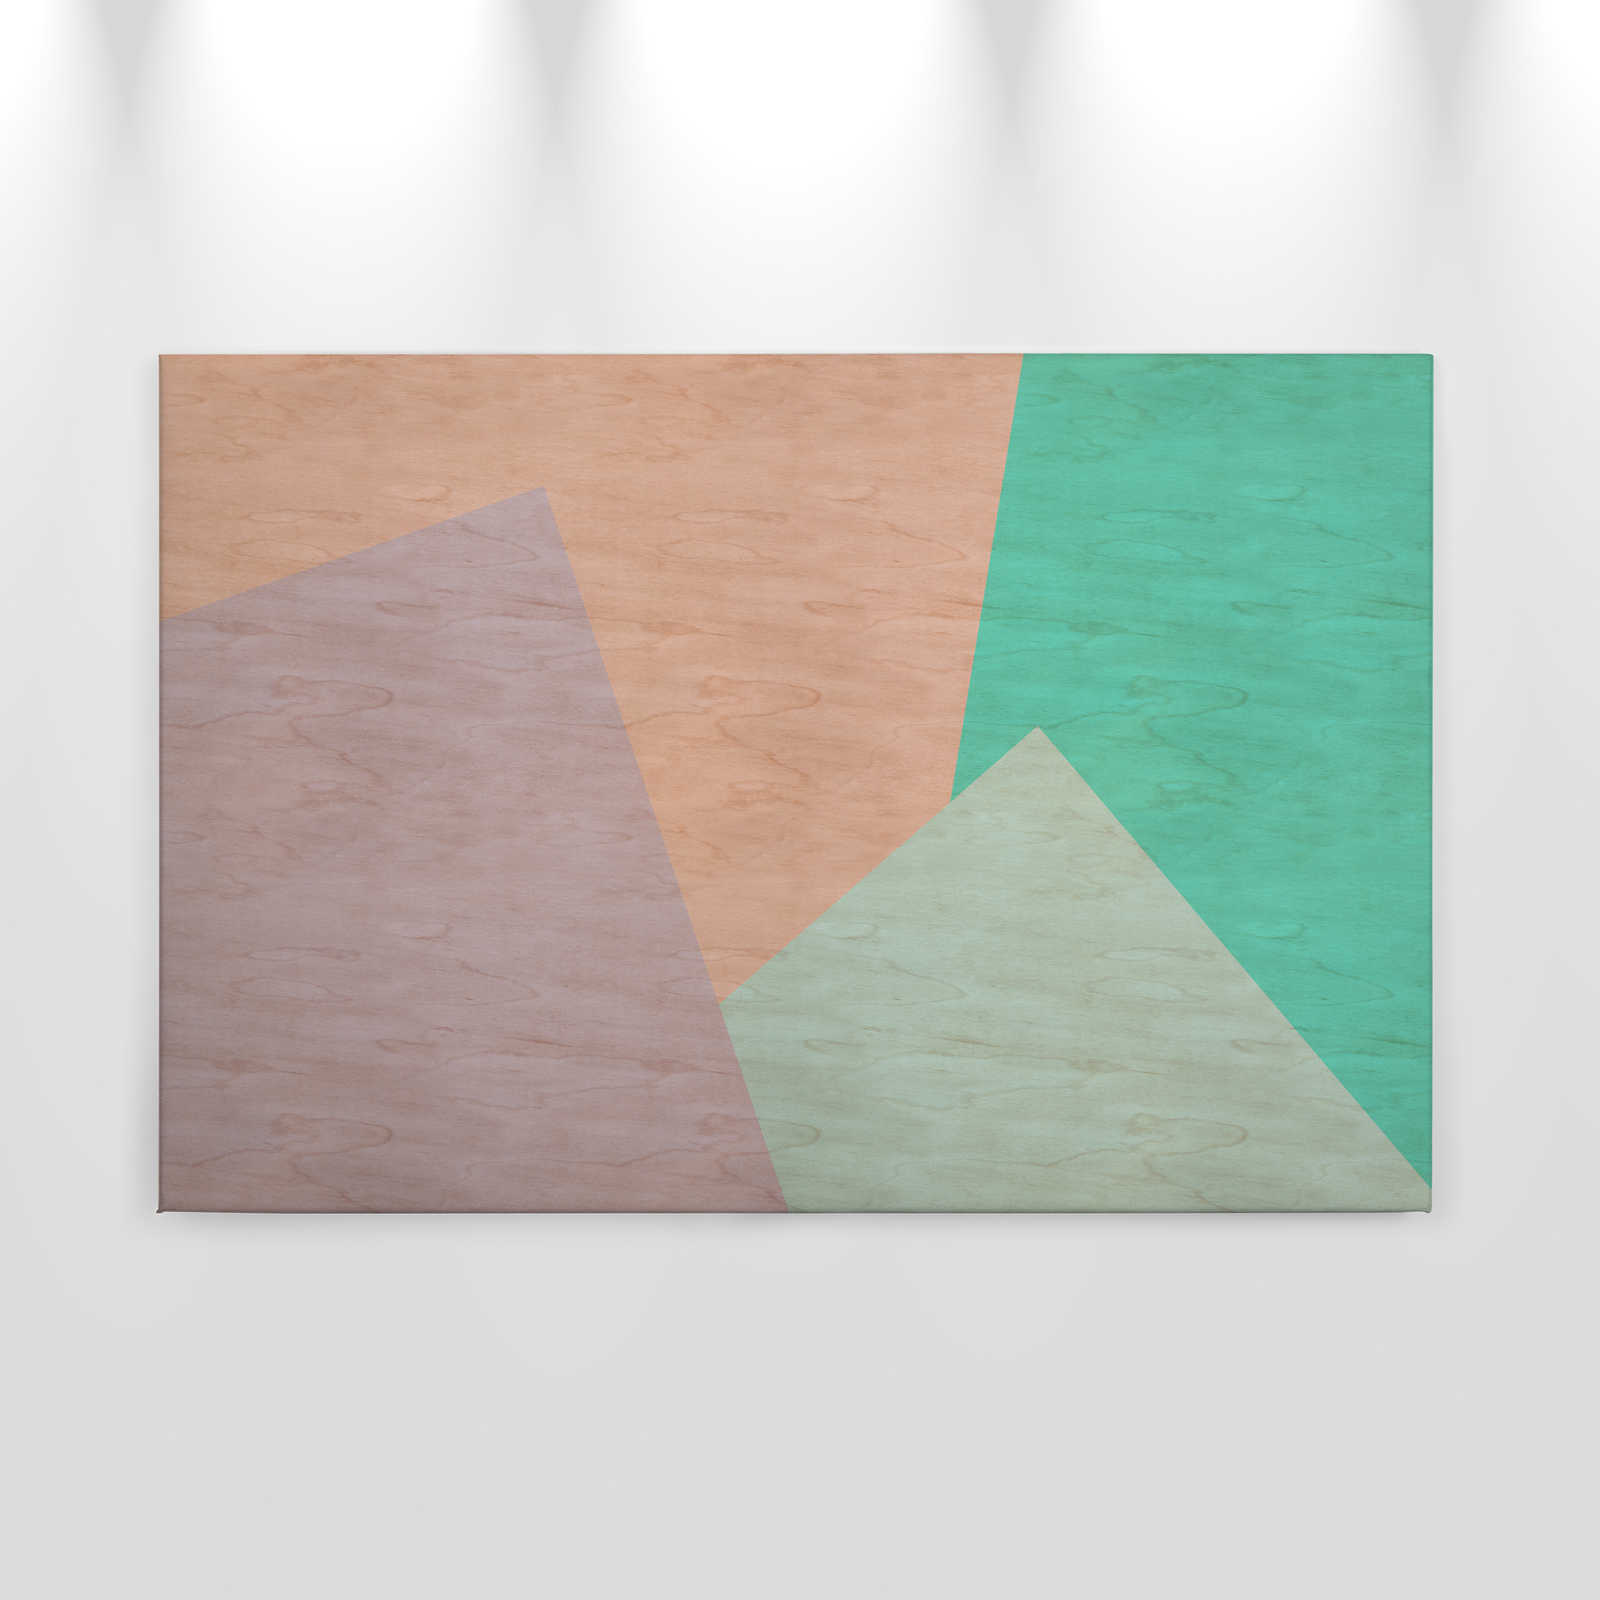             Inaly 1 - Pintura abstracta sobre lienzo de colores en estructura de contrachapado - 0,90 m x 0,60 m
        